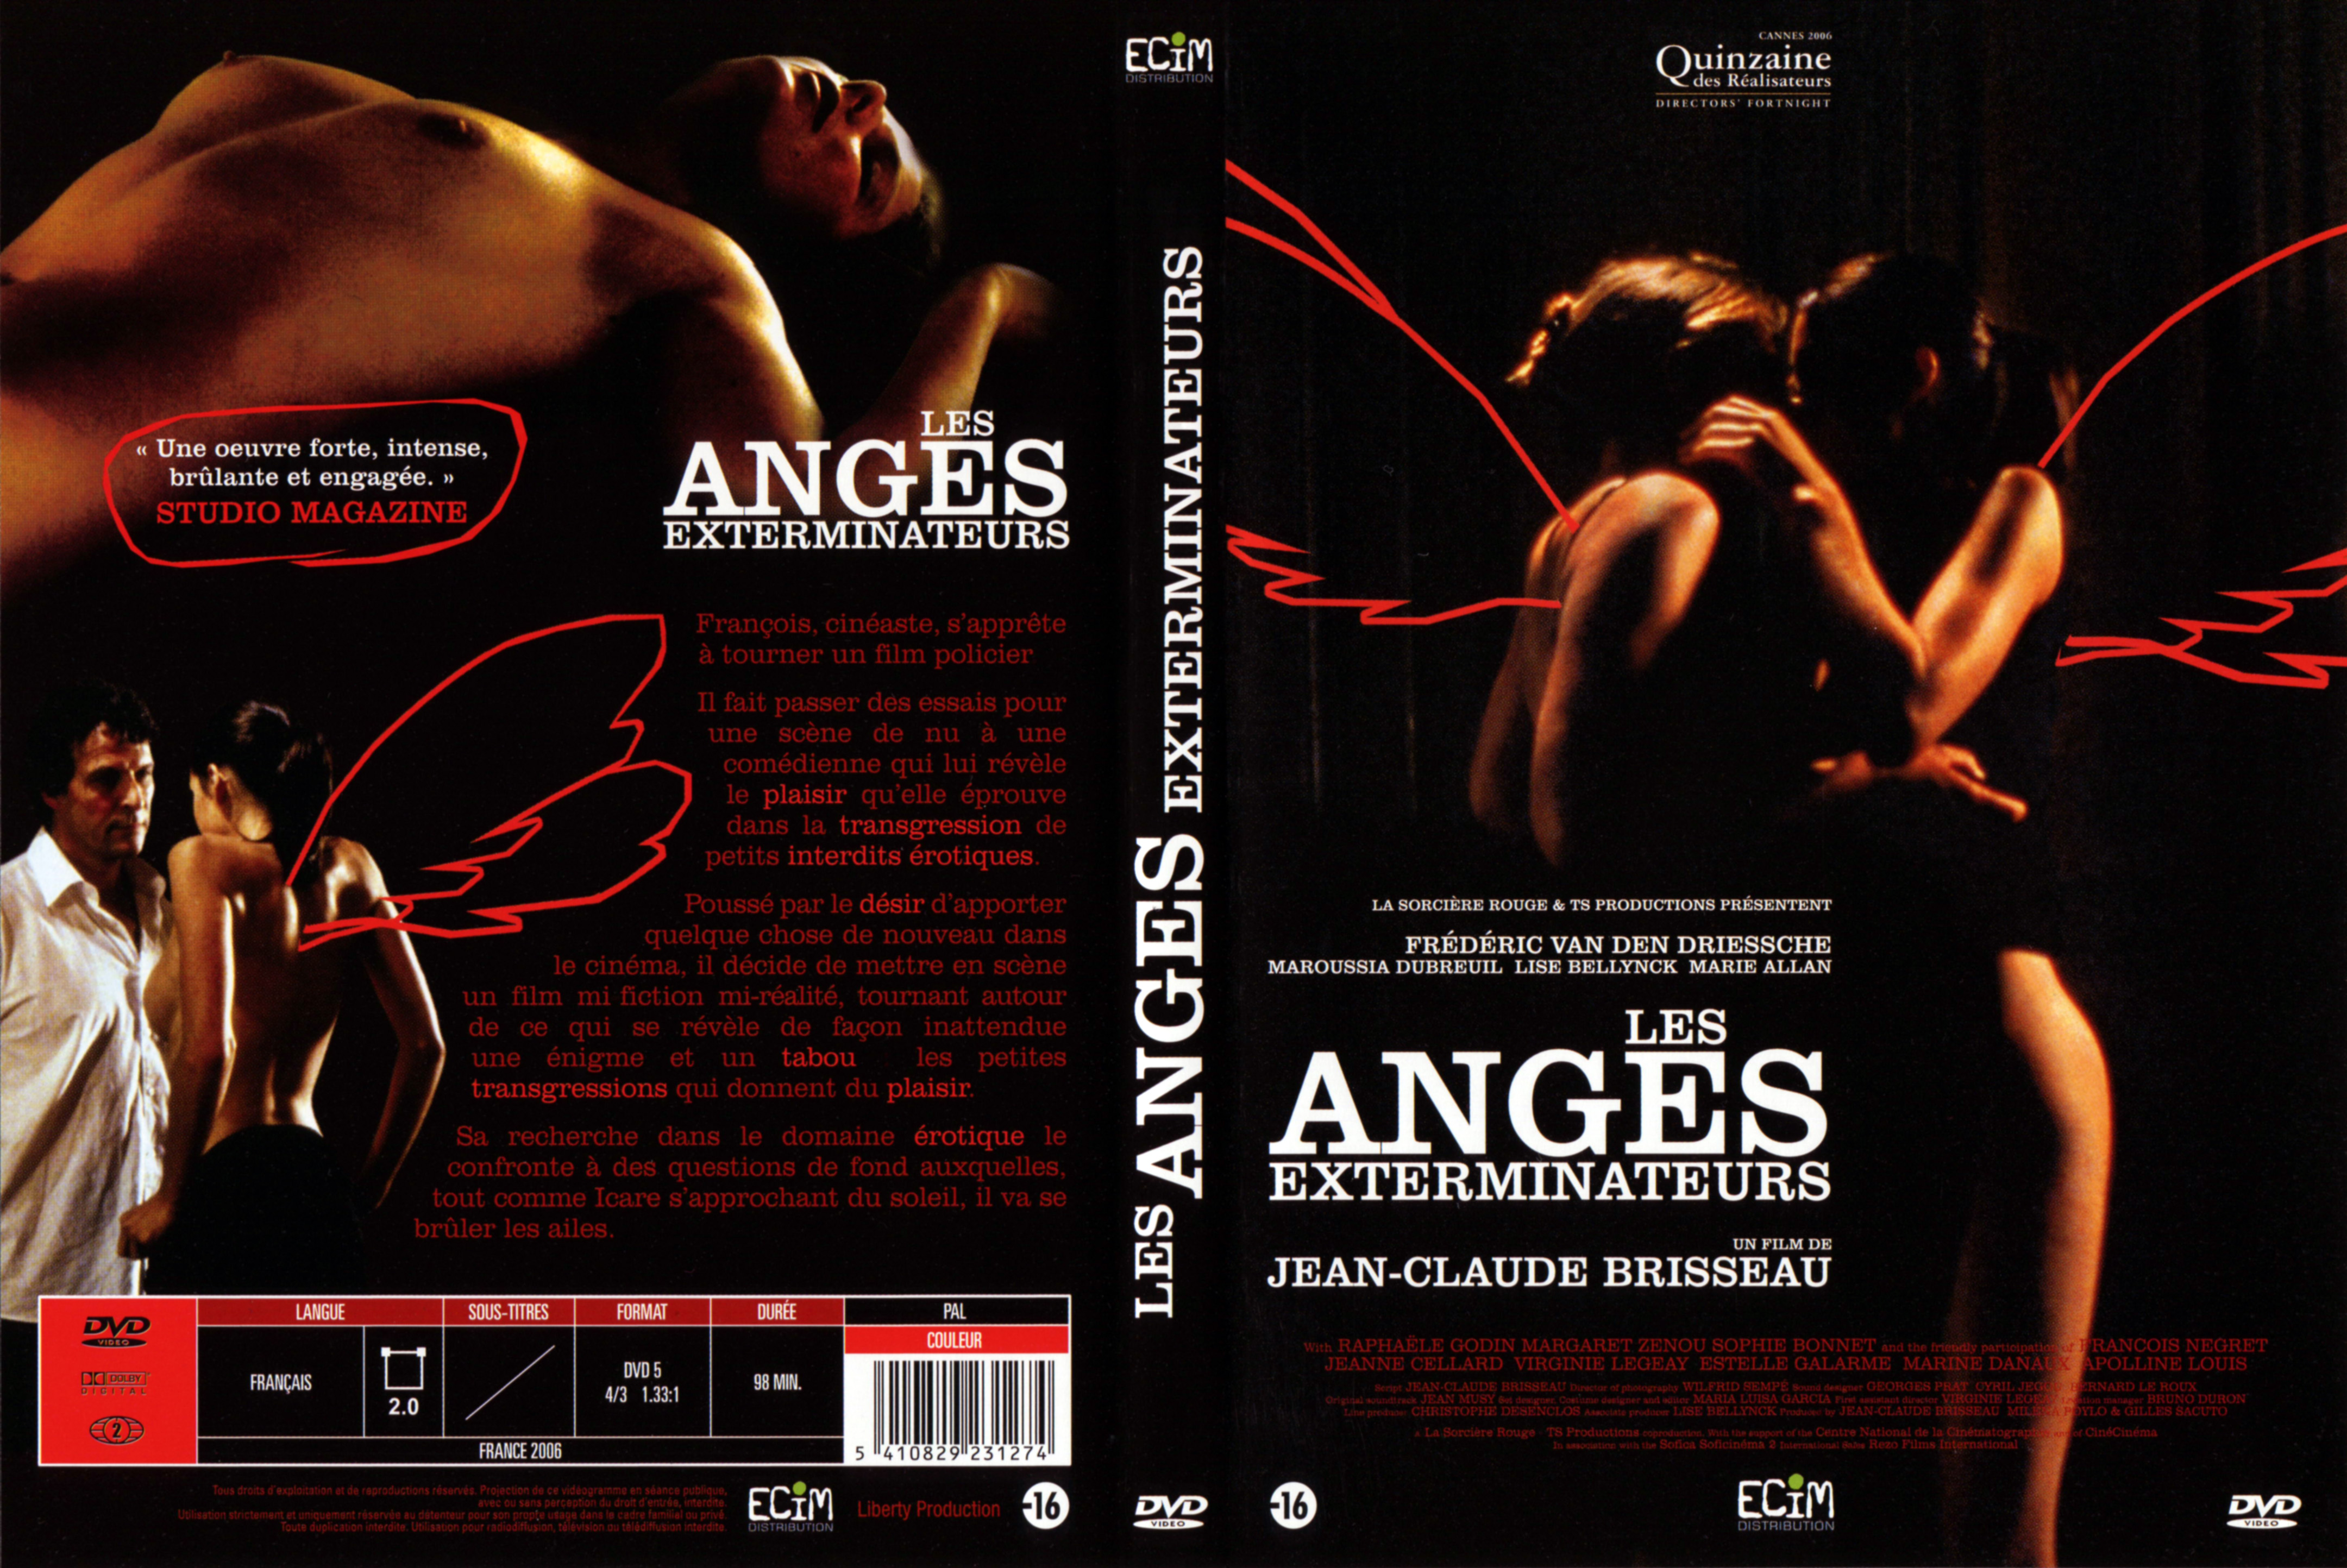 Jaquette DVD Les anges exterminateurs v2